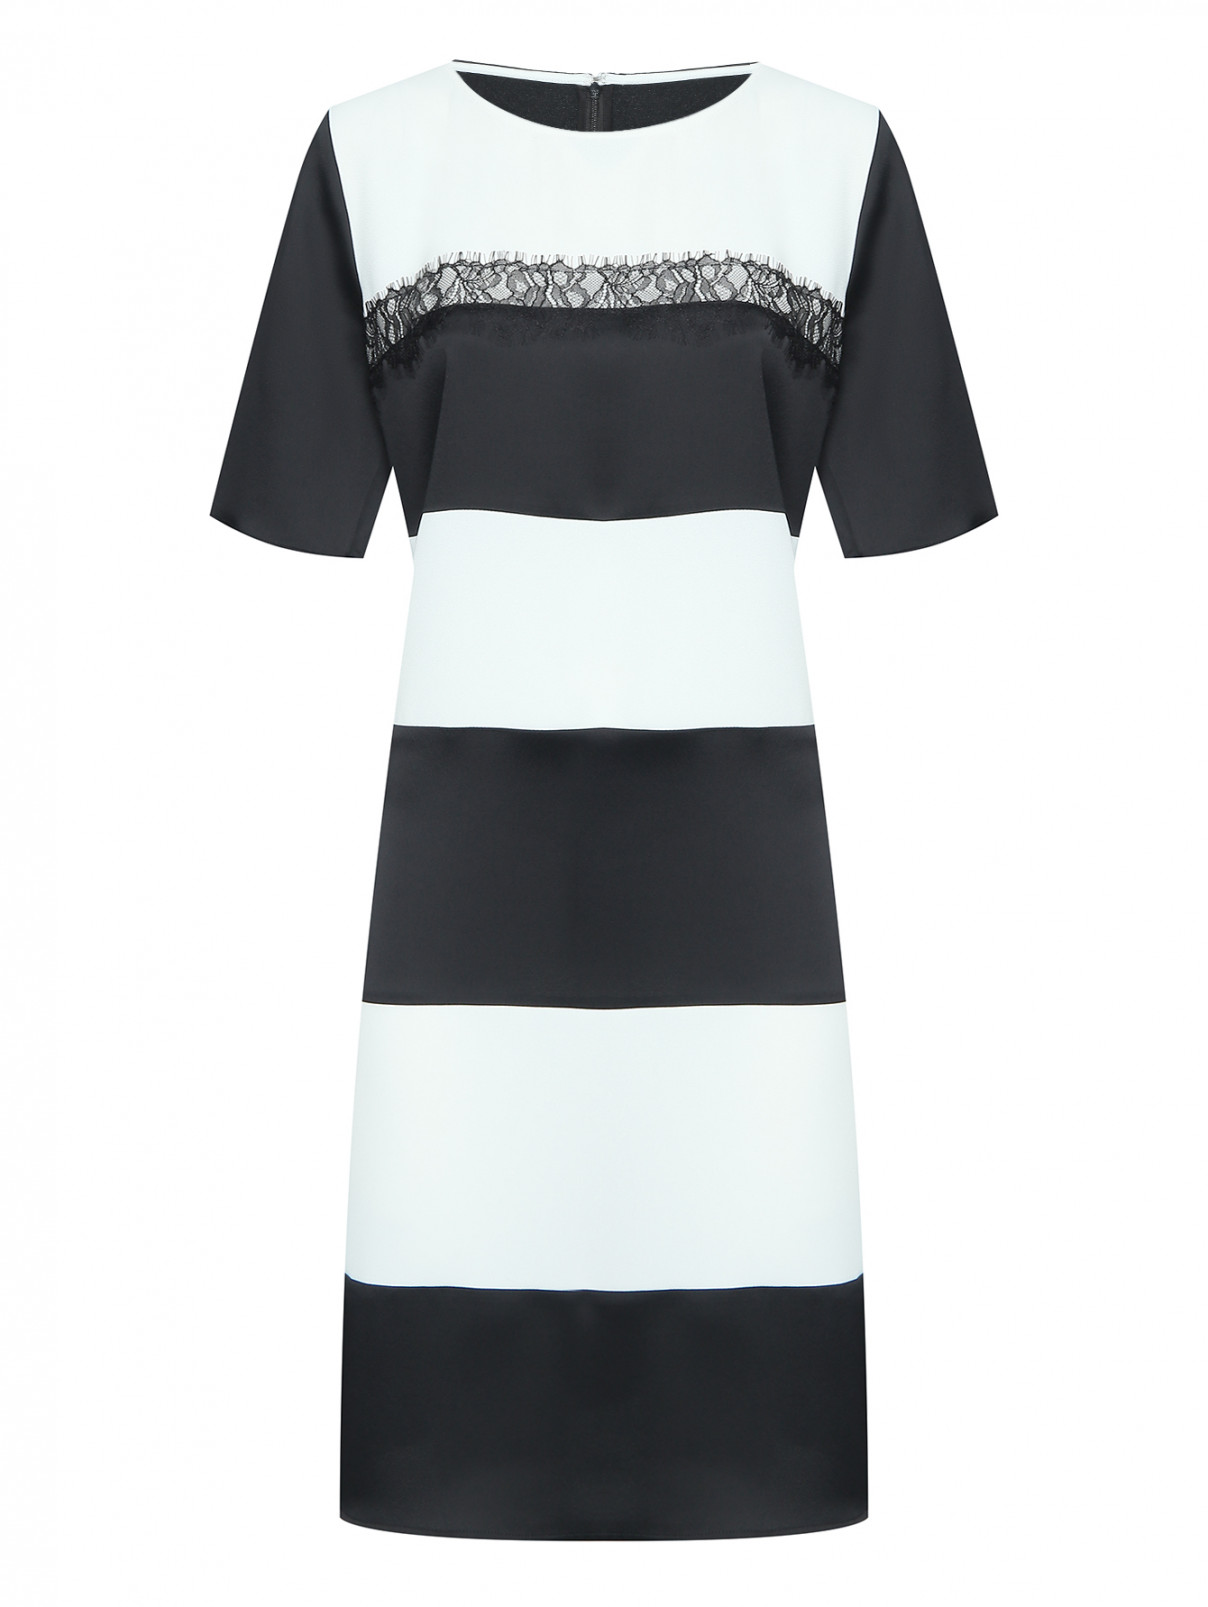 Комбинированное платье с короткими рукавами Persona by Marina Rinaldi  –  Общий вид  – Цвет:  Черный